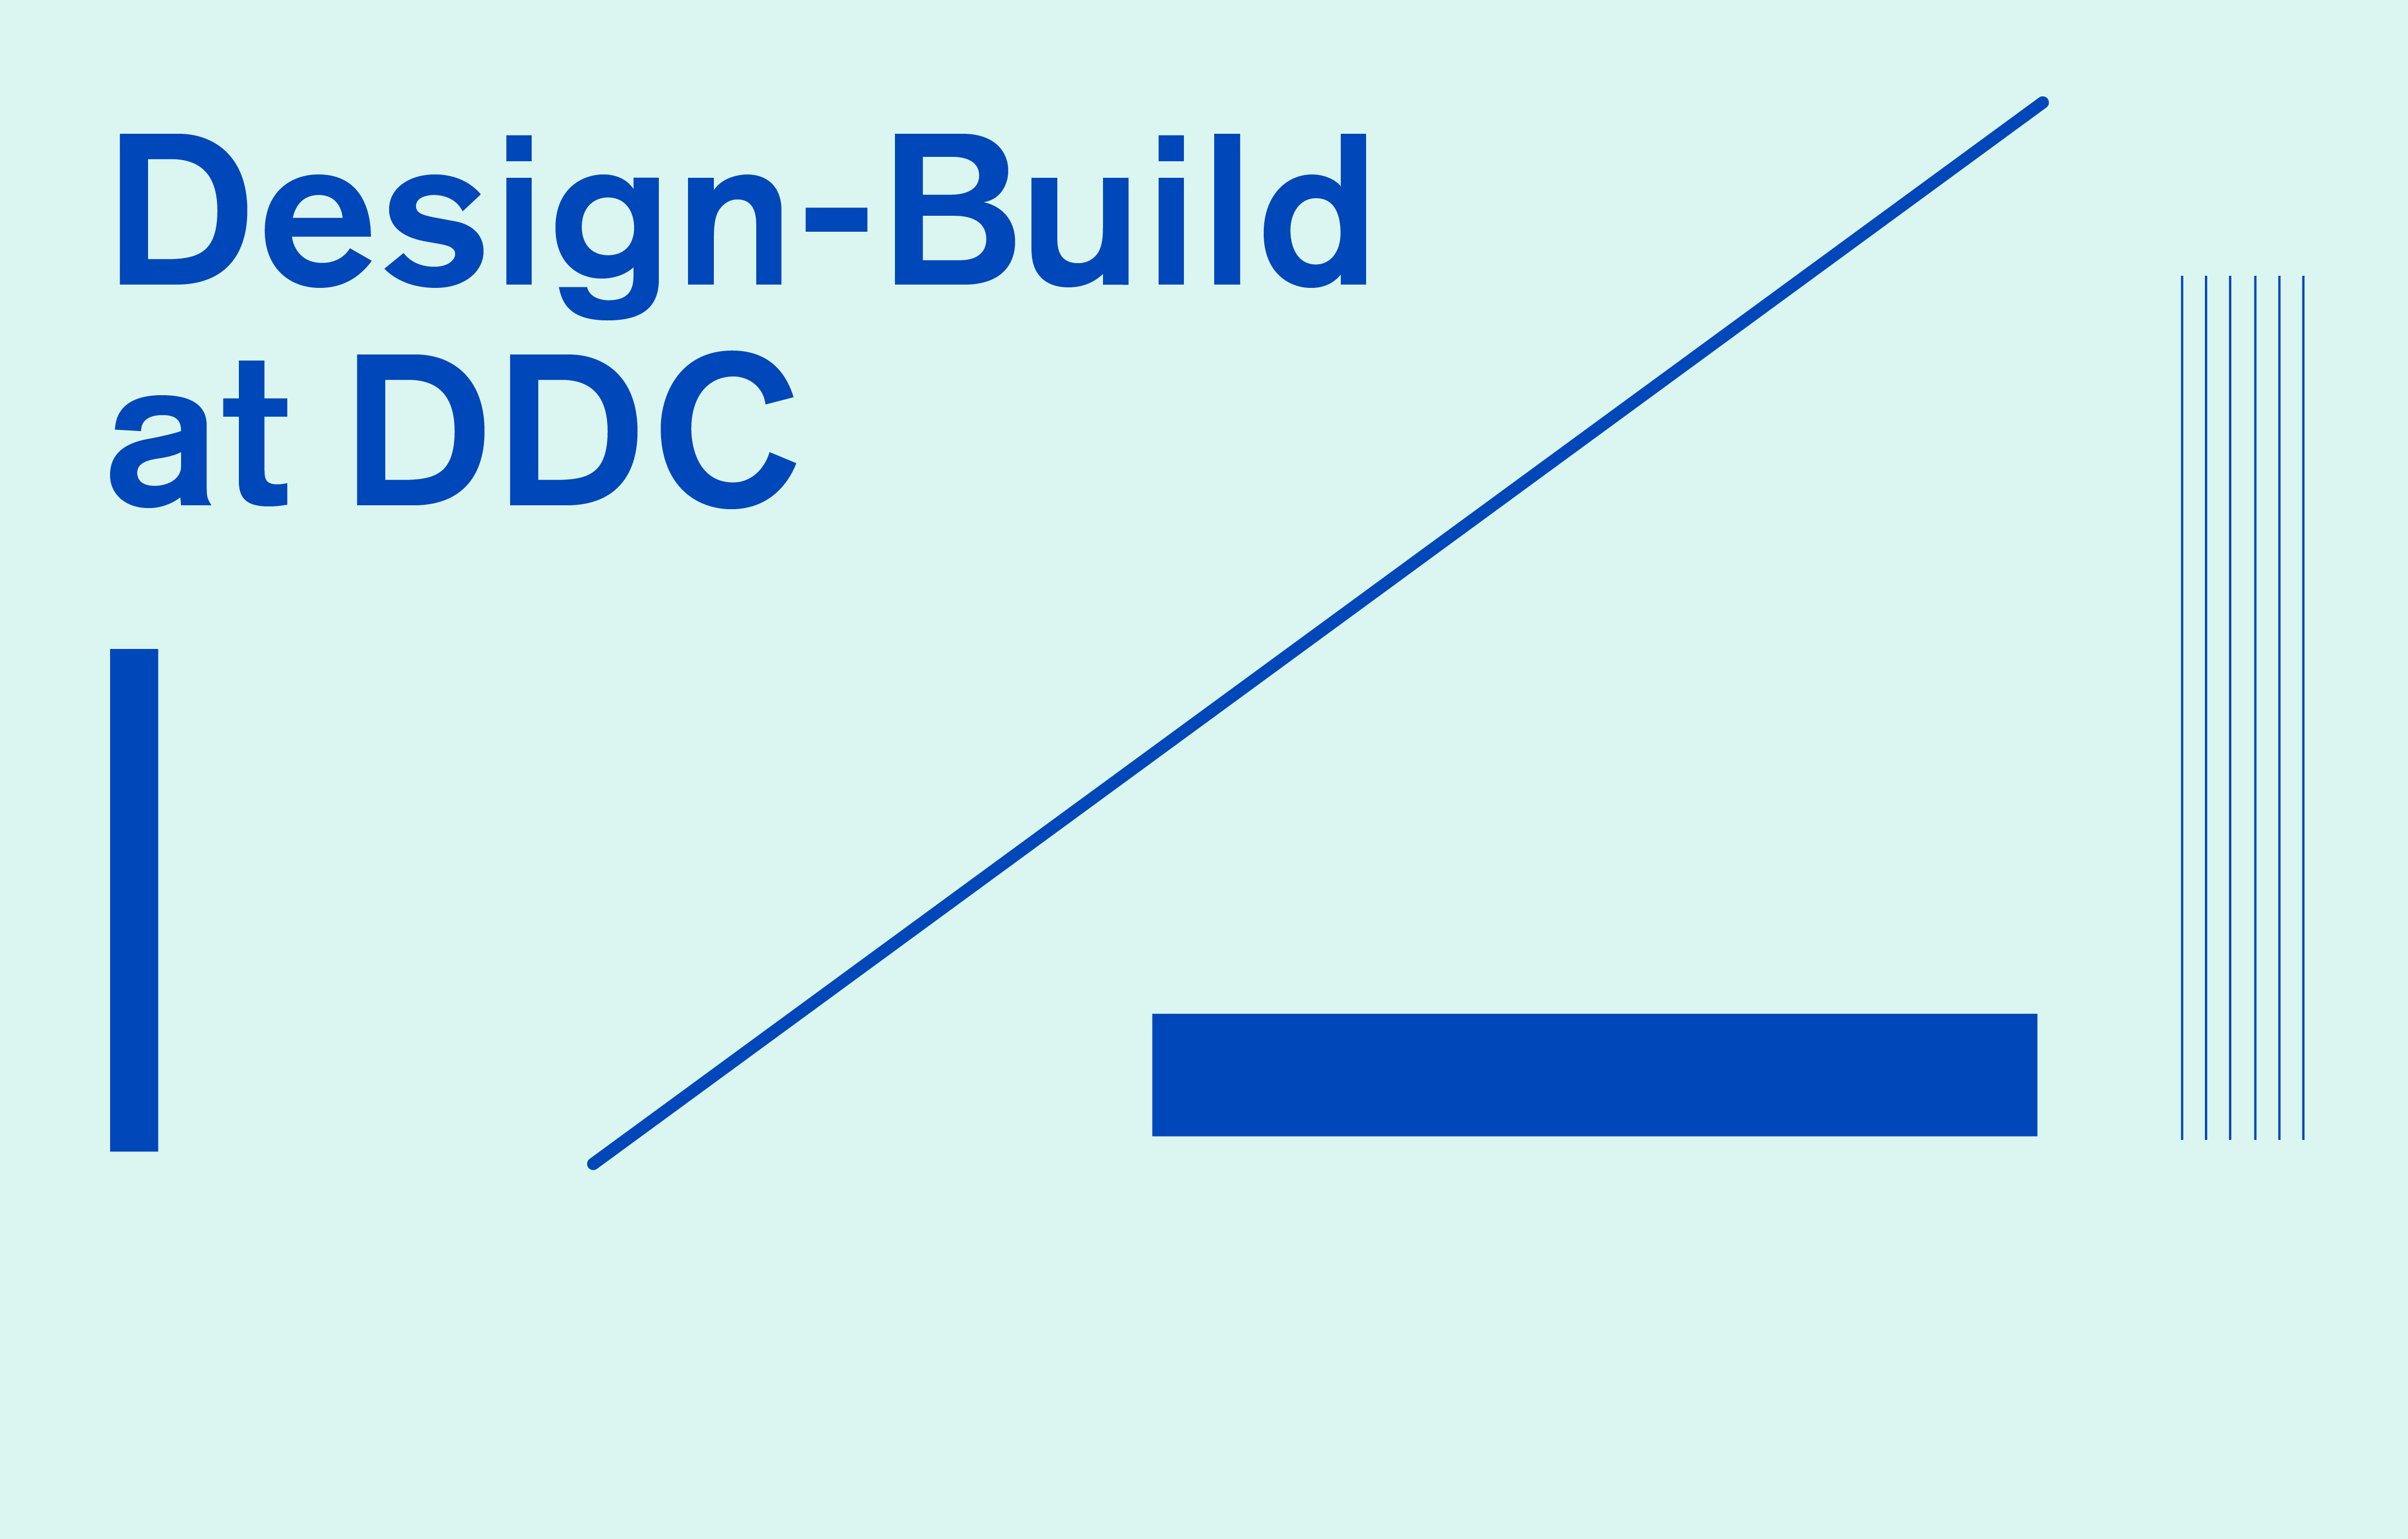 DDC Design Build Banner
                                           